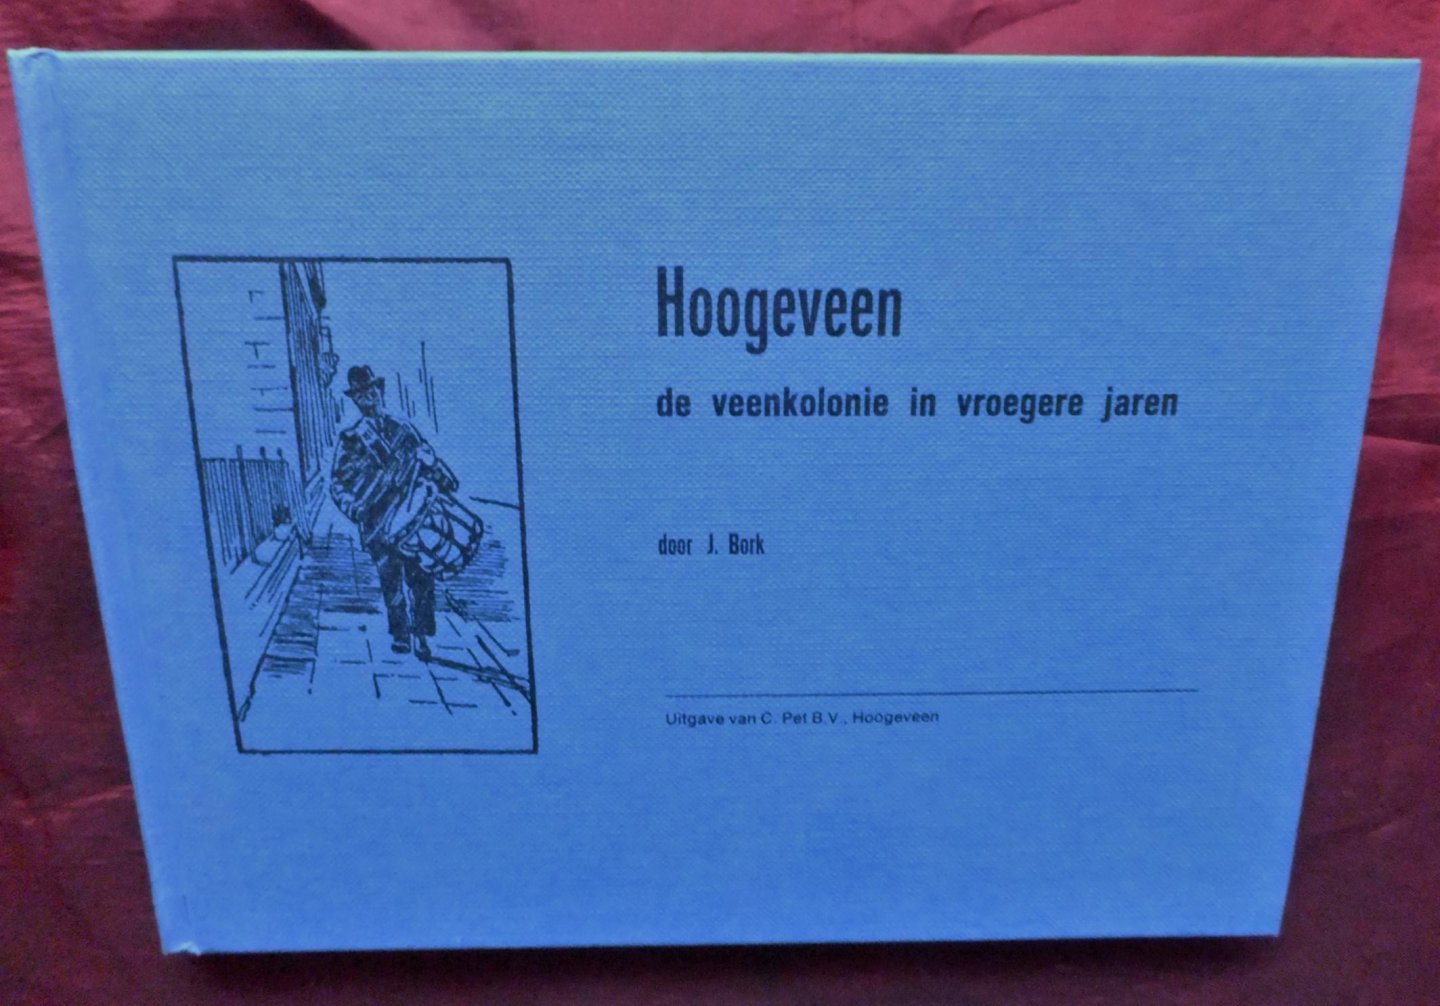 Bork J. - Hoogeveen, de veenkolonie in vroegere jaren